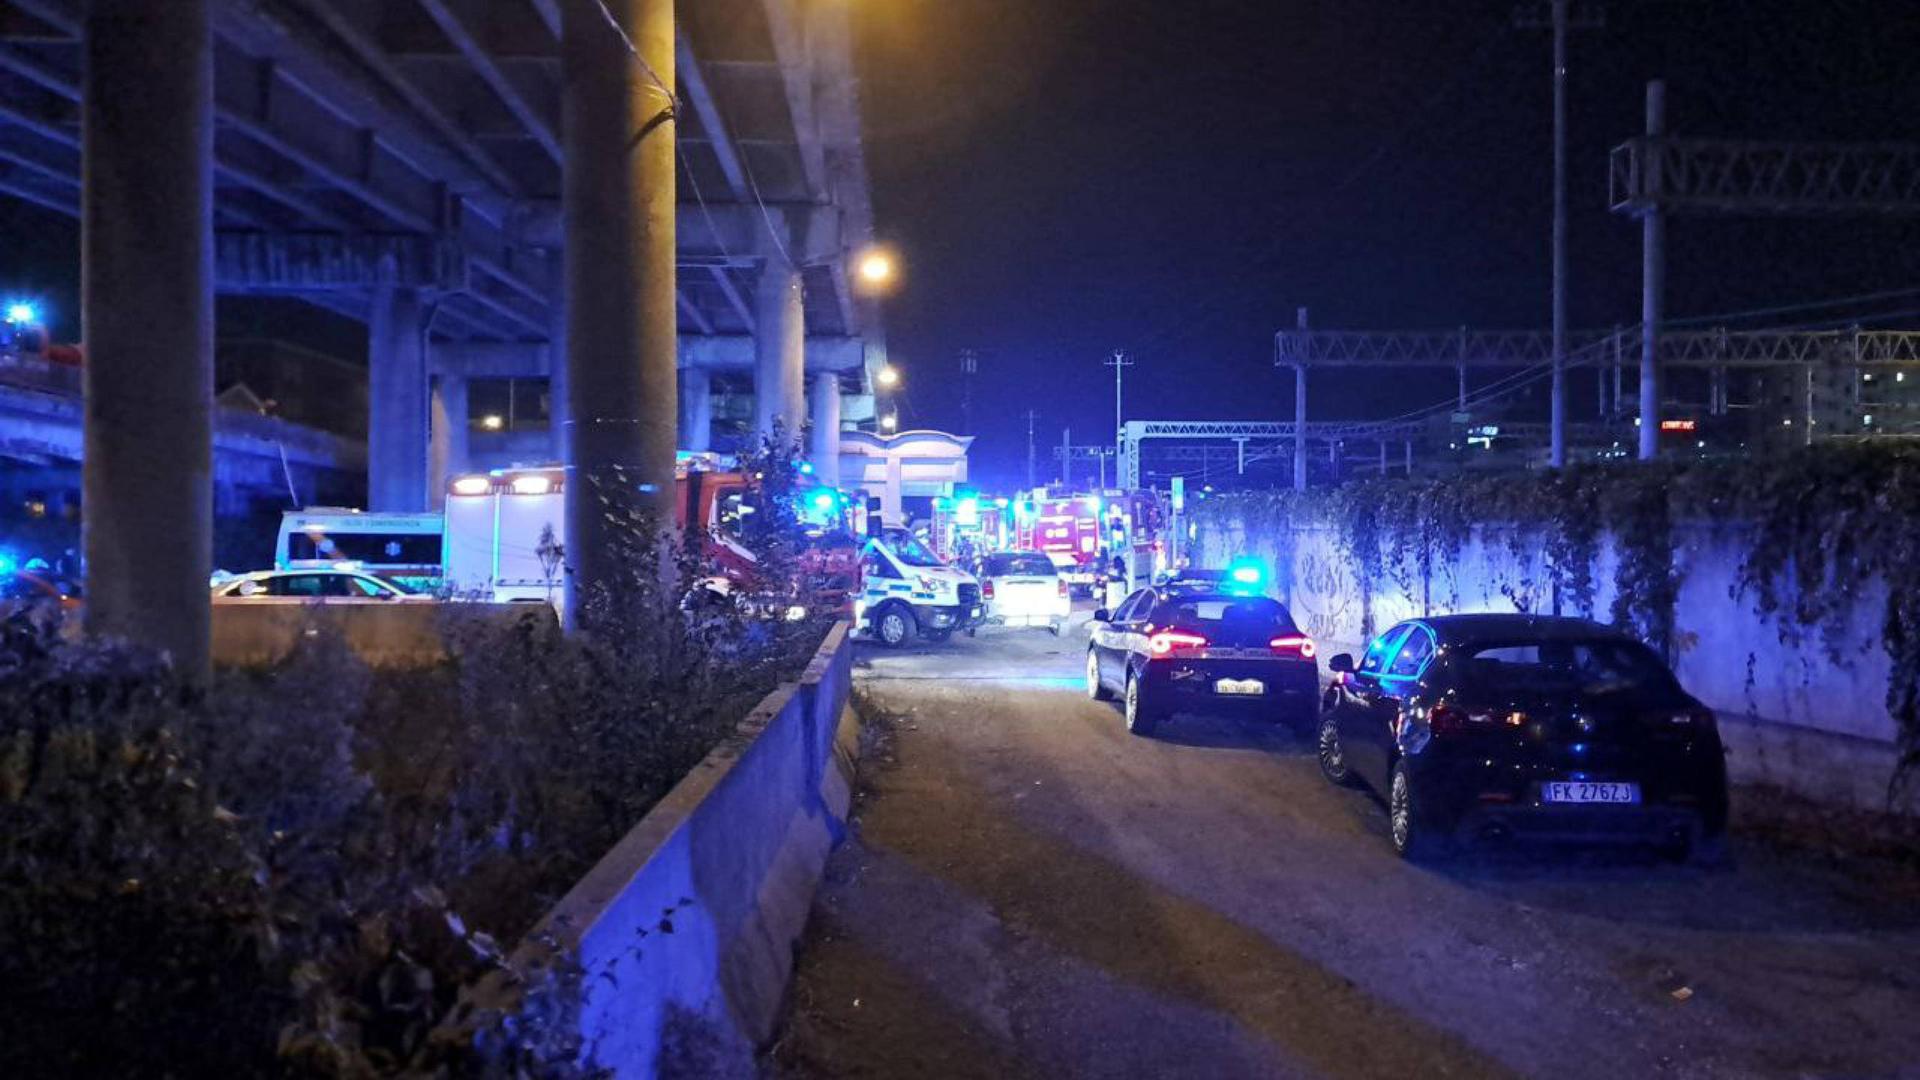 Italien - 21 Tote bei Reisebus-Unfall in Venedig - Staatsanwaltschaft ermittelt